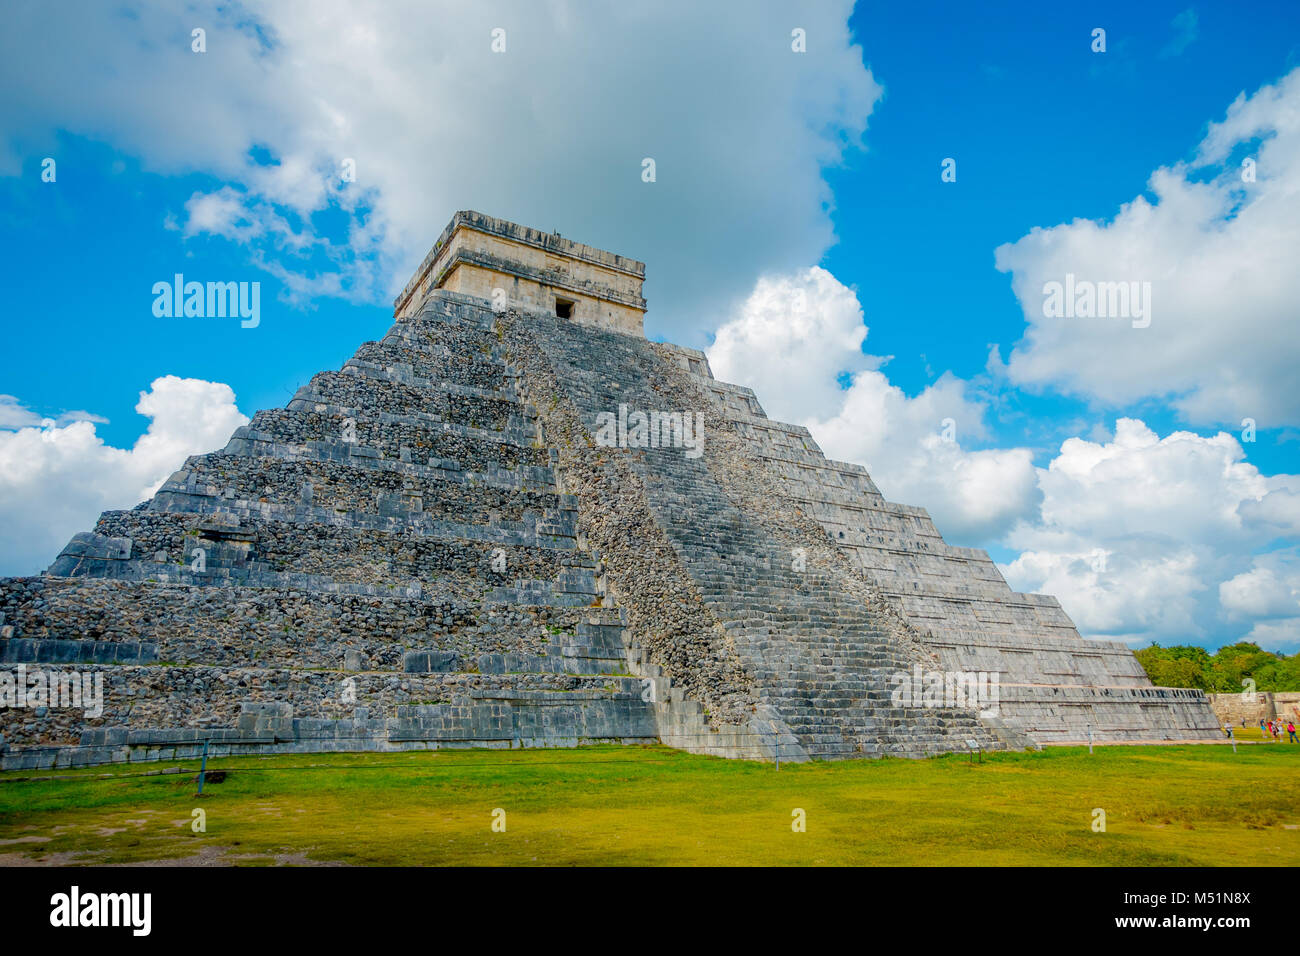 CHICHEN ITZA, MEXIQUE - 12 NOVEMBRE 2017 : Les étapes de la fameuse pyramide de Chichen Itza sur la péninsule du Yucatan au Mexique avec un magnifique ciel bleu dar avec un cluds certains Banque D'Images